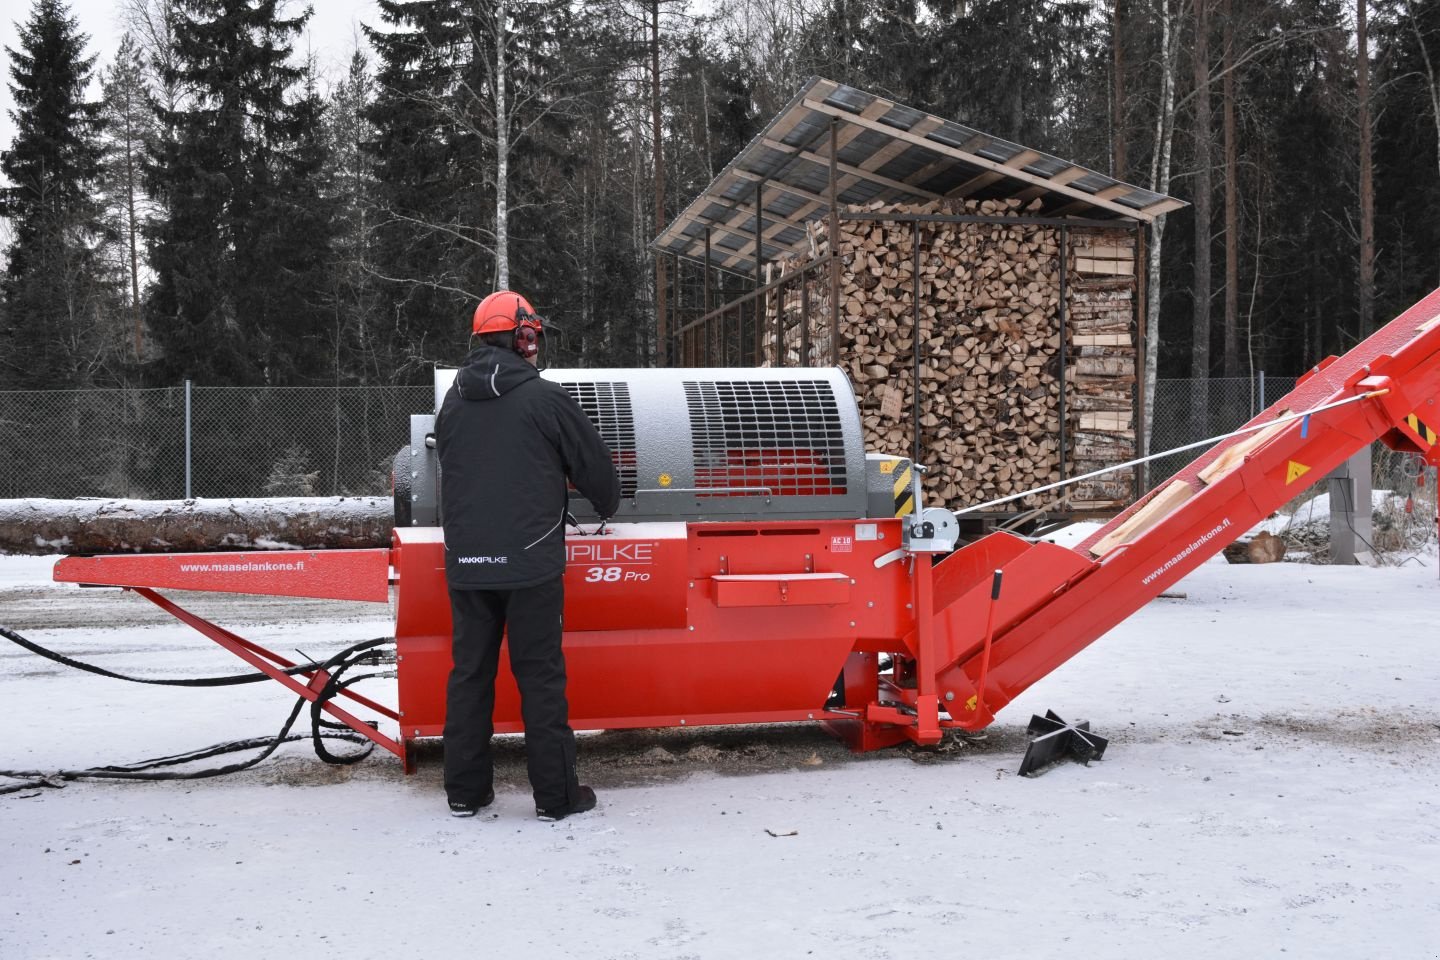 Holzspalter des Typs Hakki Pilke 38 PRO, Gebrauchtmaschine in Grou (Bild 3)